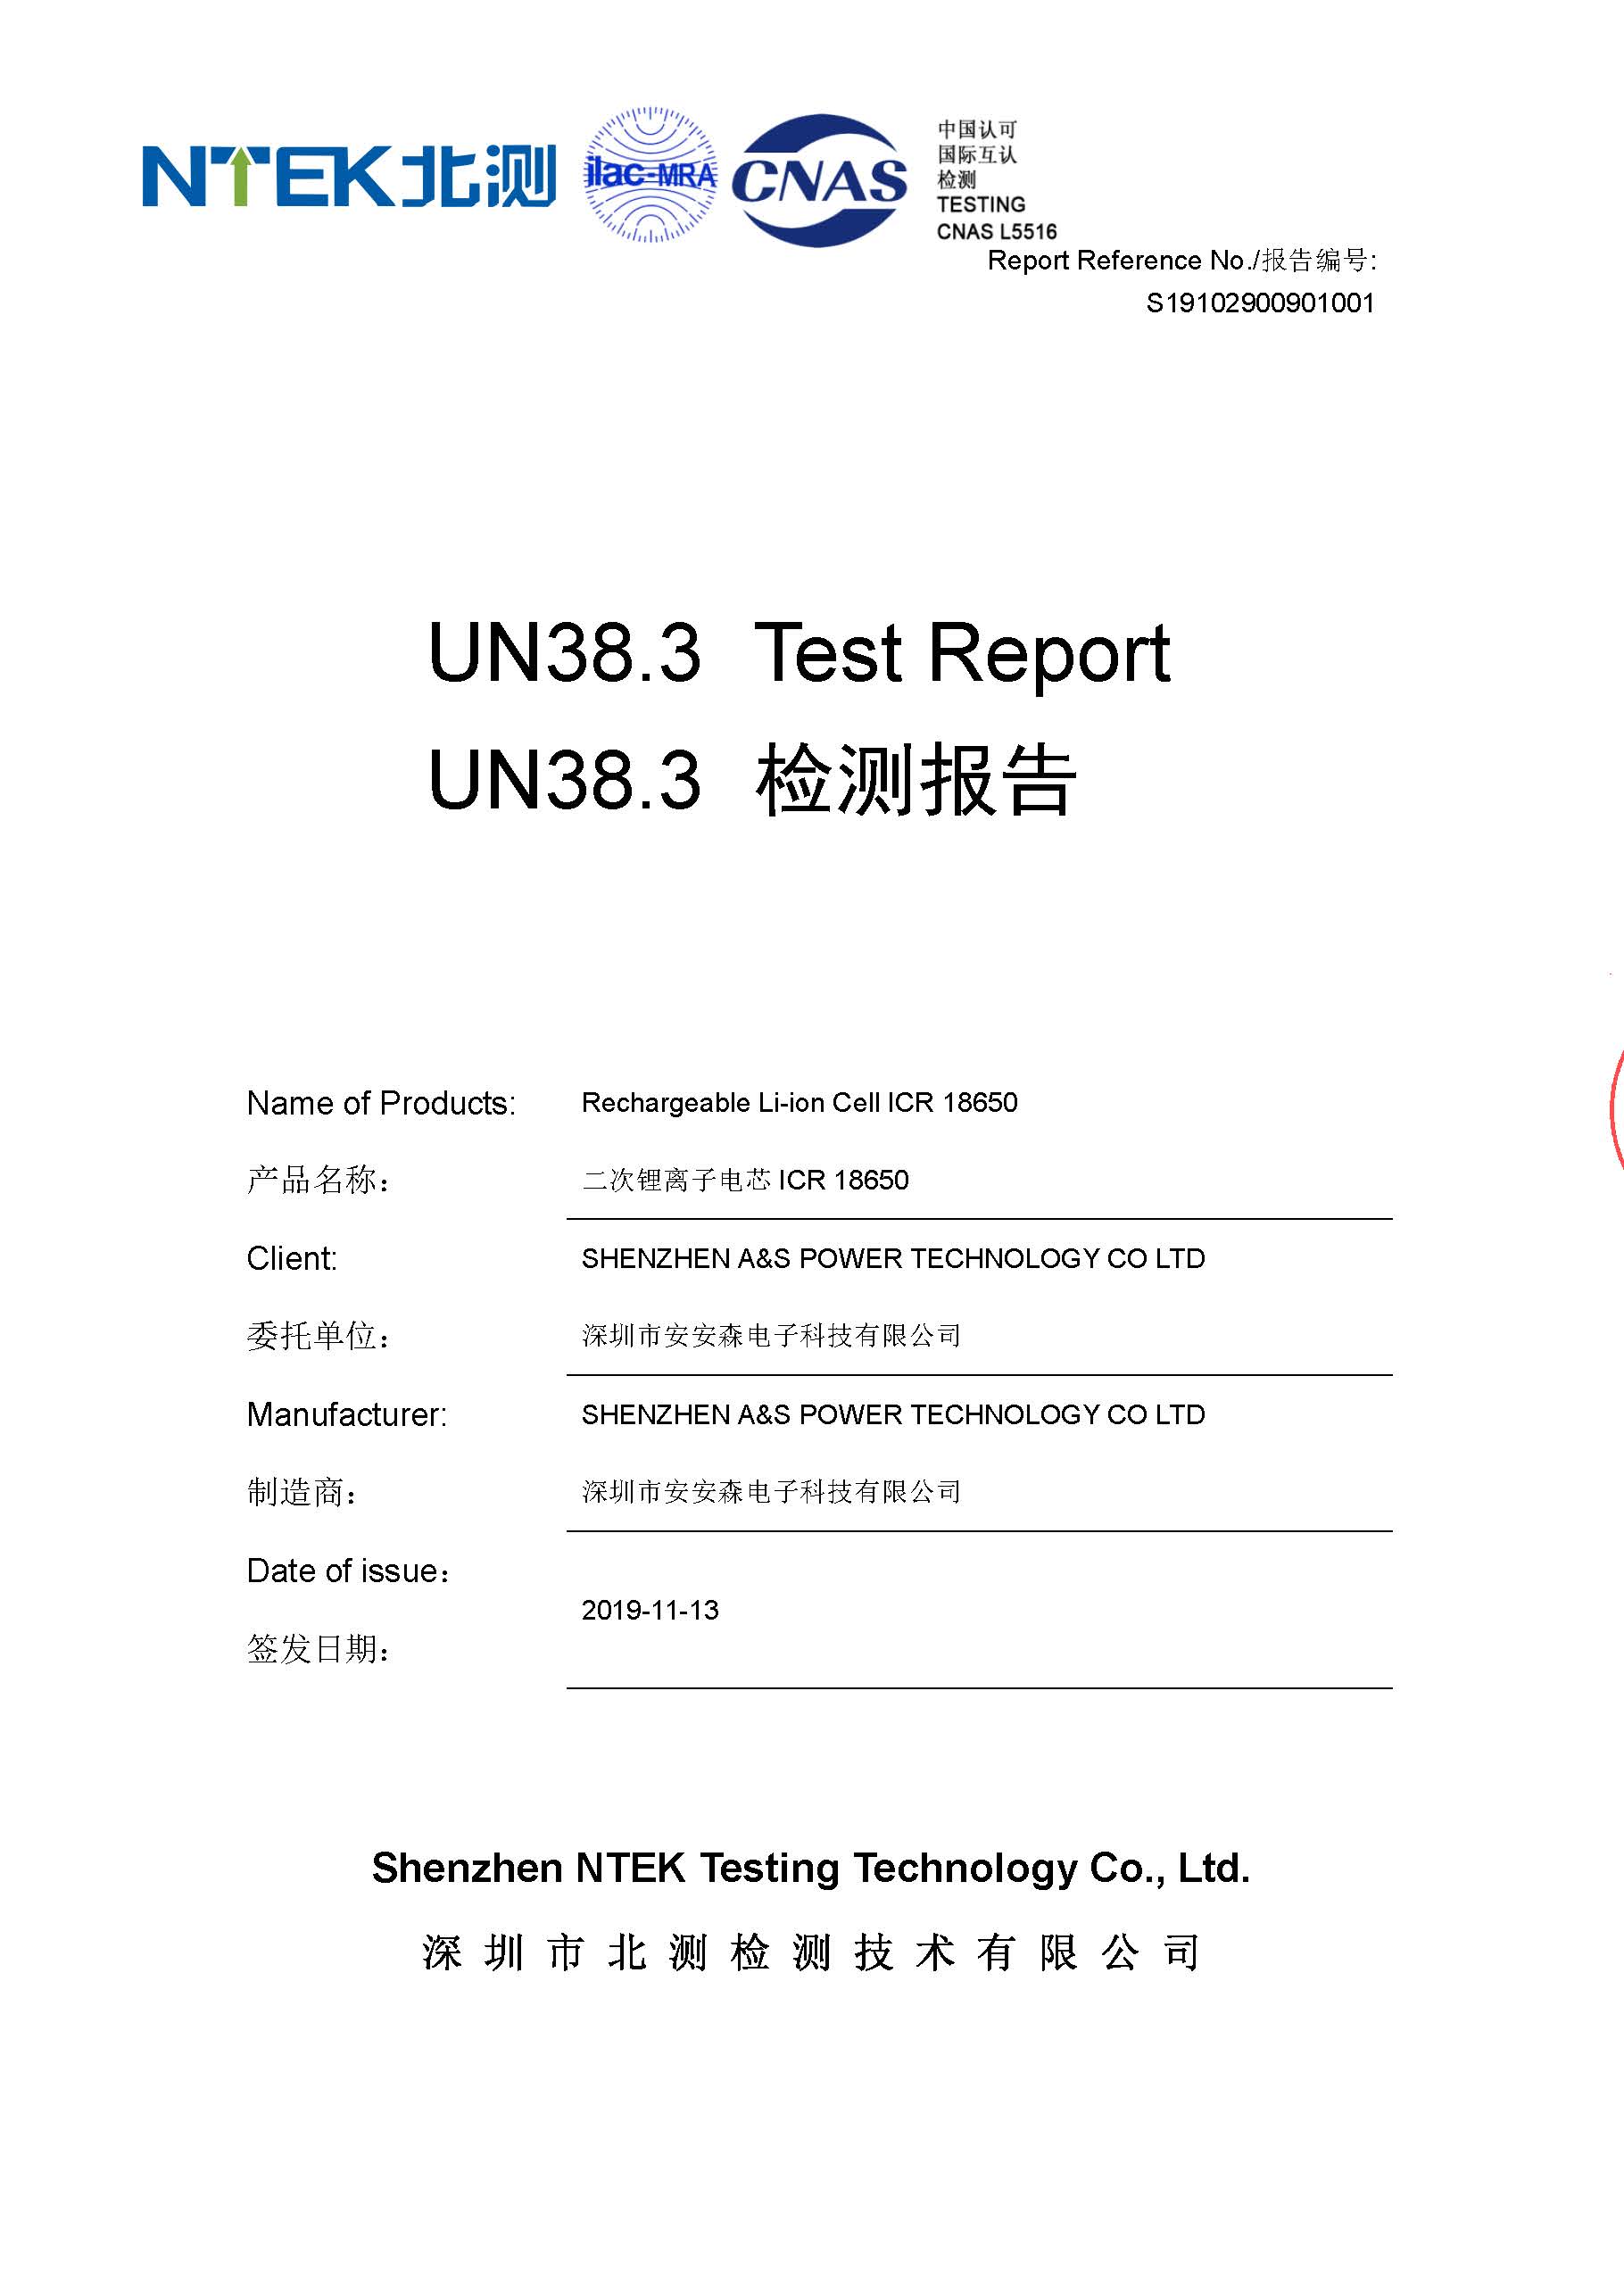 A&S Power 18650 3.7V 3350mAh UN38.3 Test Report